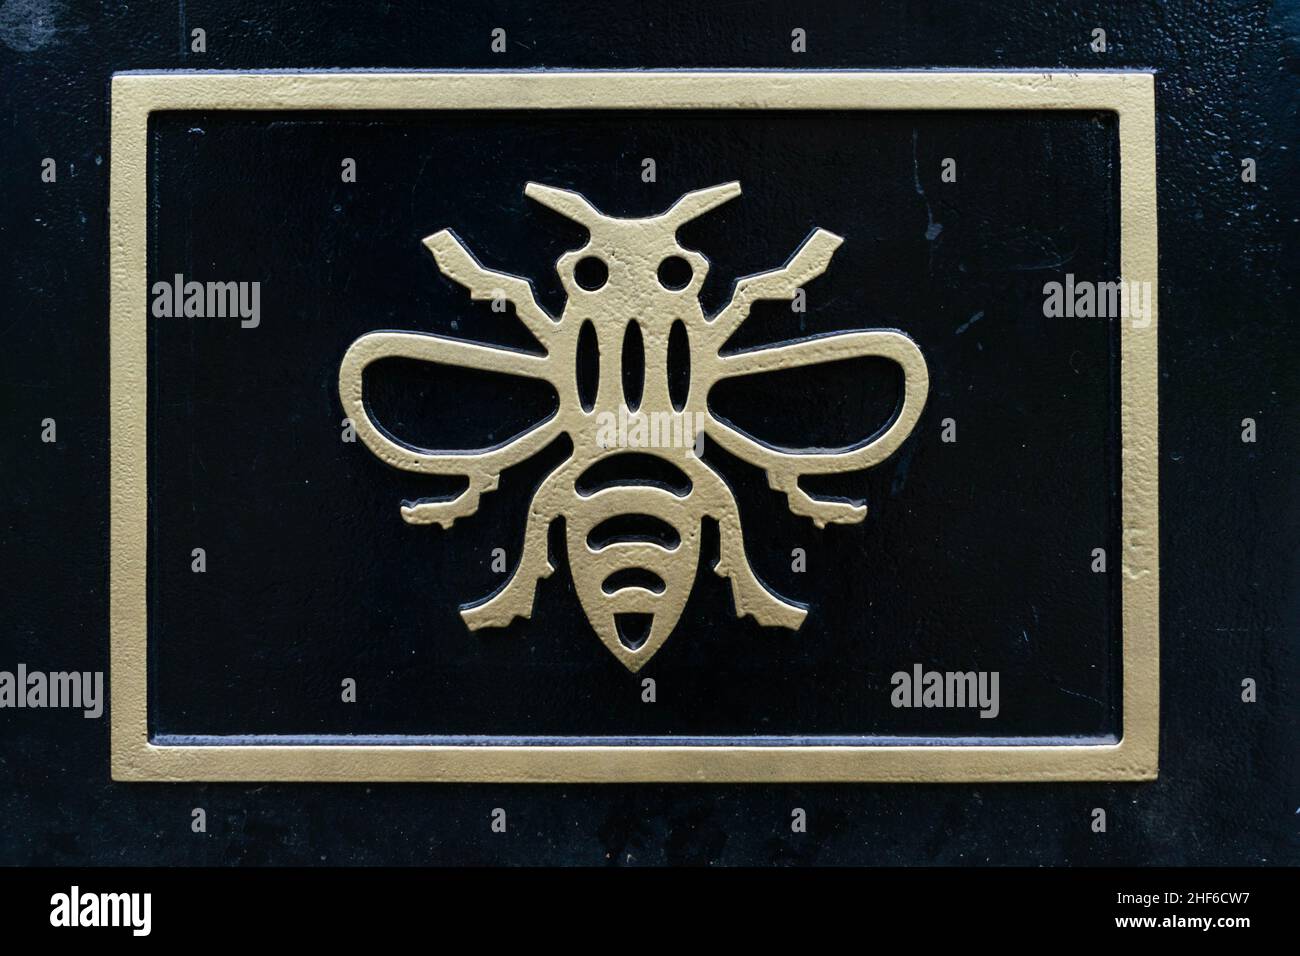 El Manchester Bee simboliza la ciudad como un hervidero de actividad. Después del ataque terrorista en el Manchester Arena, ha llegado a representar a lo increíble Foto de stock